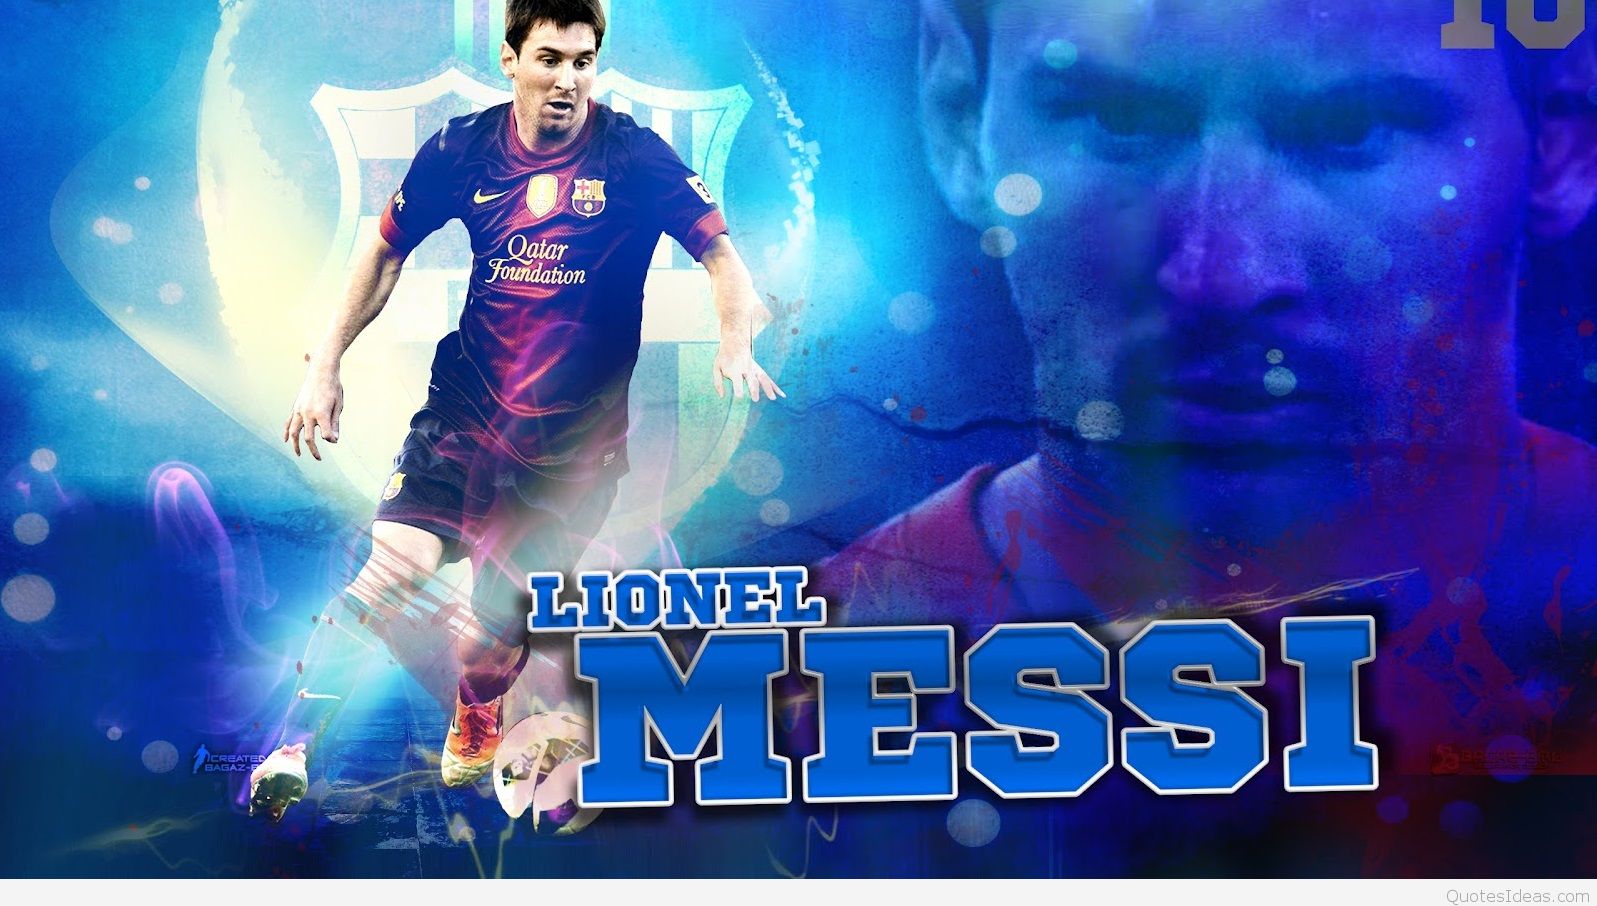 Messi Wallpaper Hd - Messi Wallpaper 2014 - HD Wallpaper 